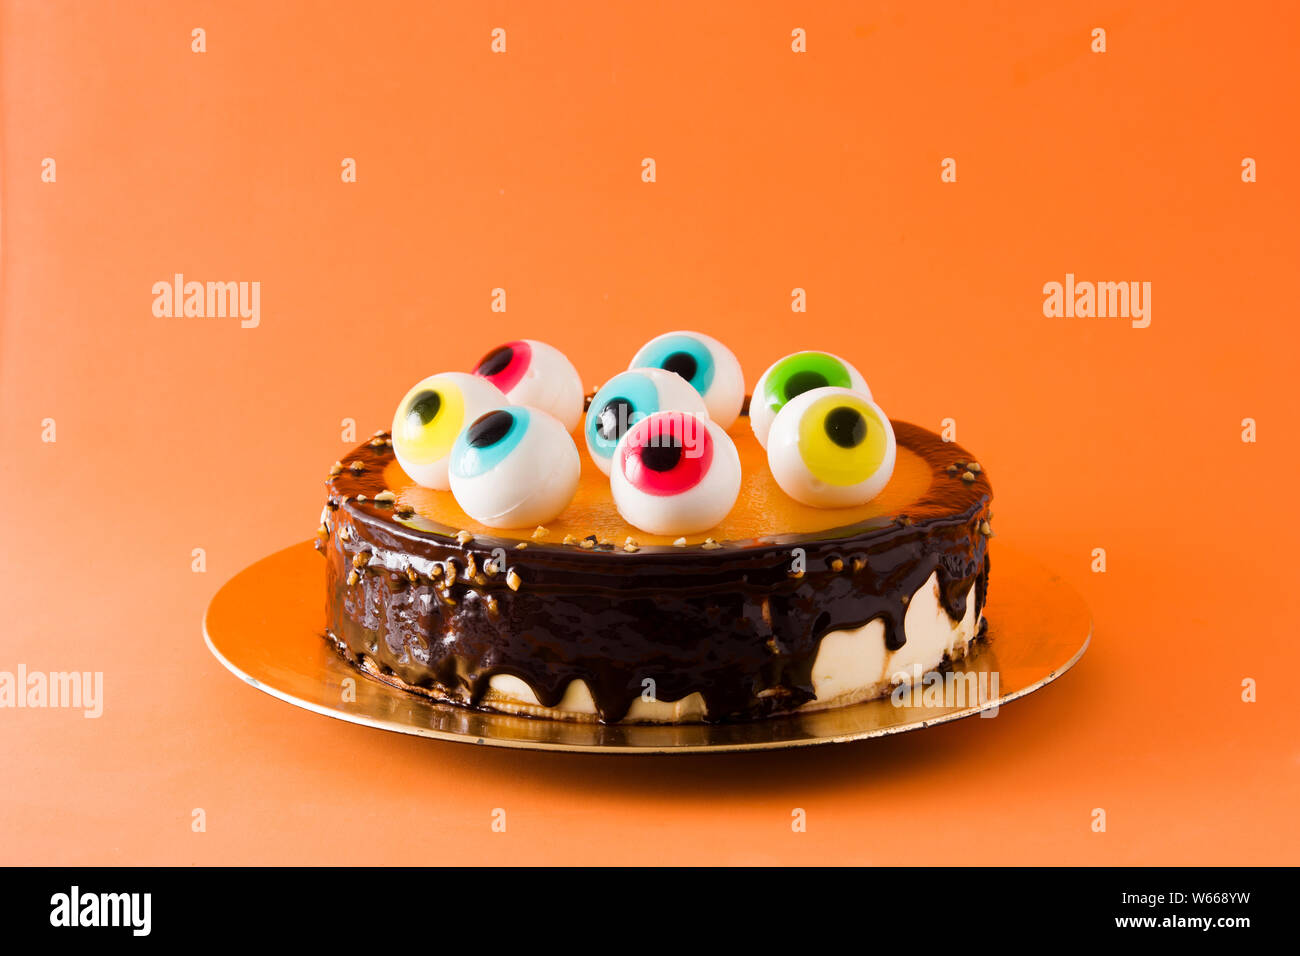 Halloween cake with candy eyes decoration on orange background ...